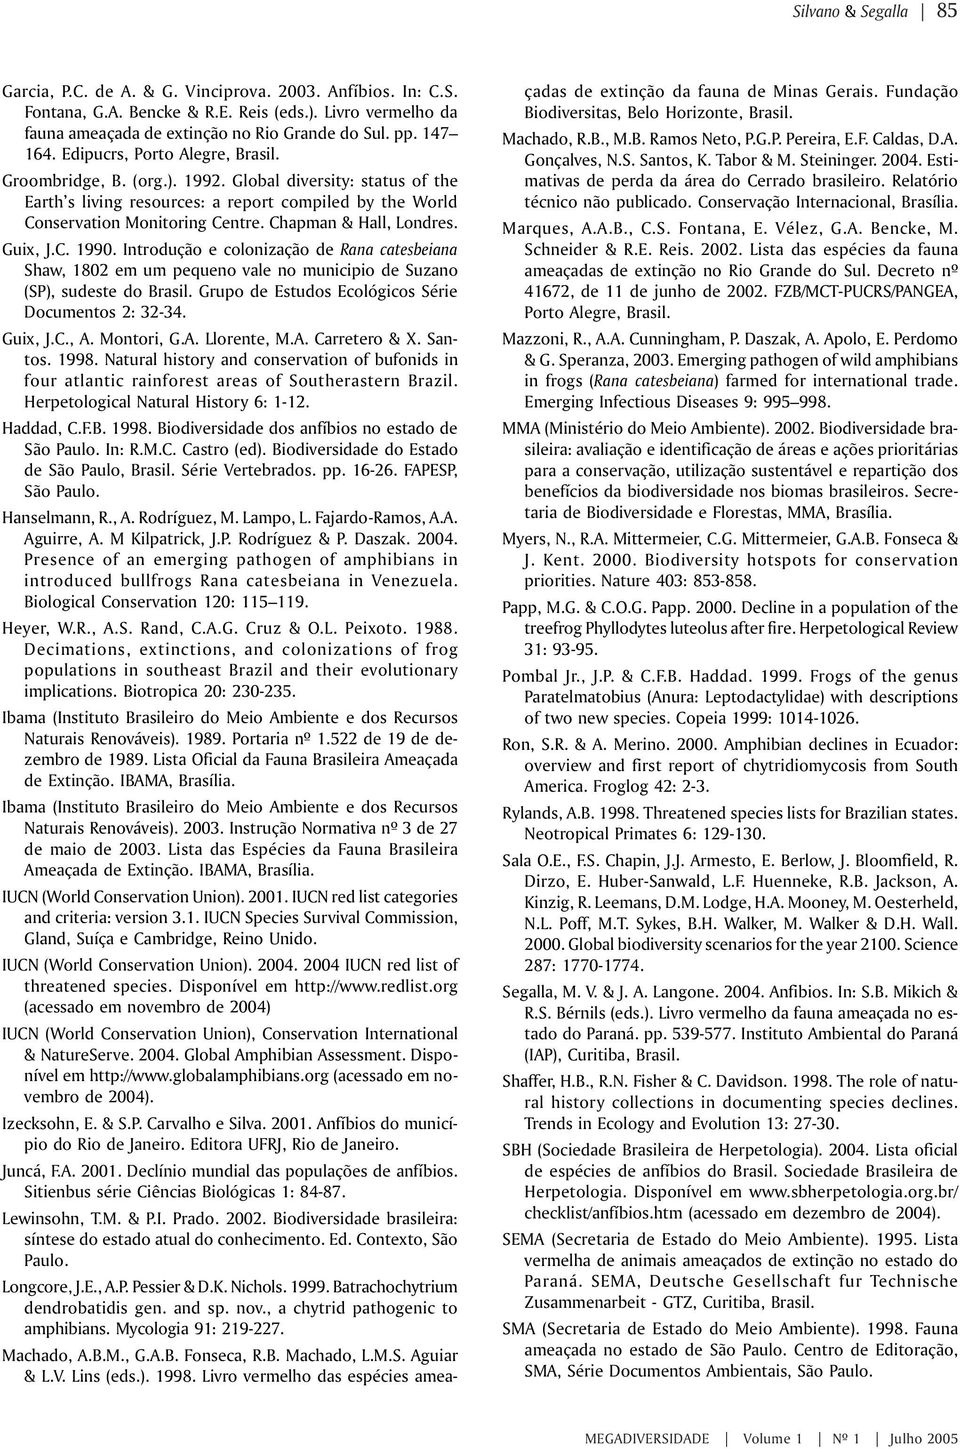 Chapman & Hall, Londres. Guix, J.C. 1990. Introdução e colonização de Rana catesbeiana Shaw, 1802 em um pequeno vale no municipio de Suzano (SP), sudeste do Brasil.